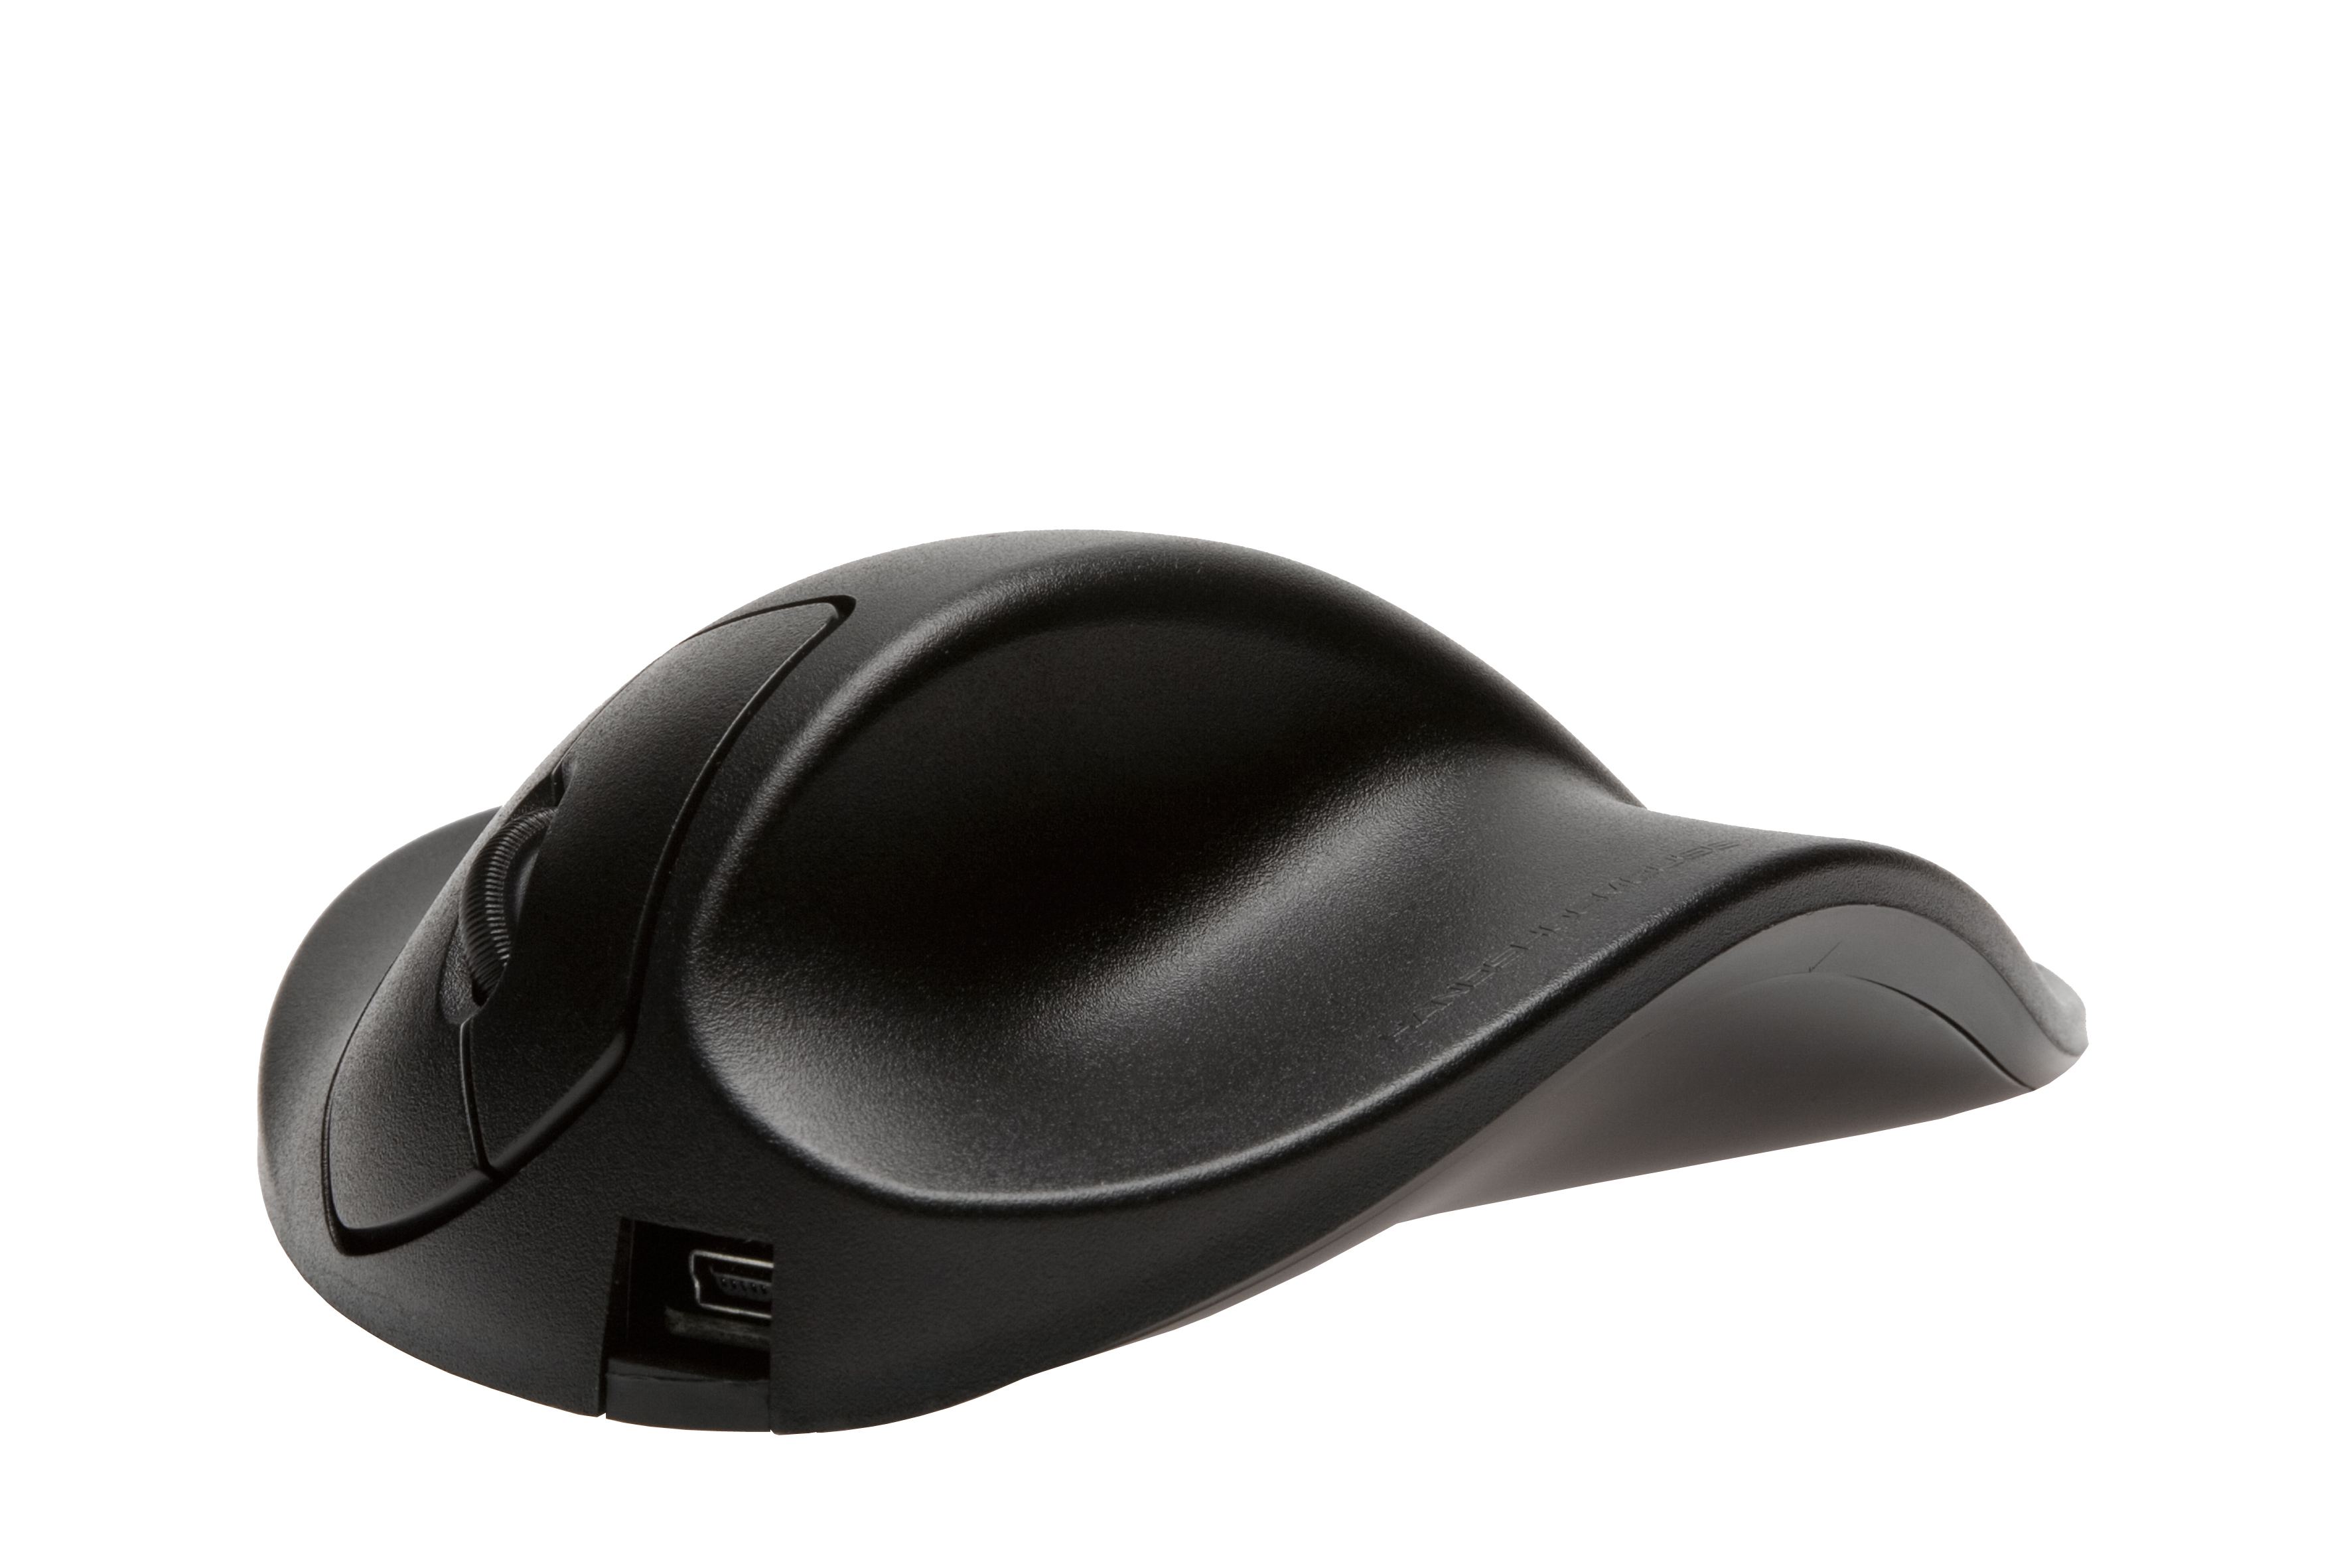 ergonomische schwarz S2WB-LC Maus, HIPPUS